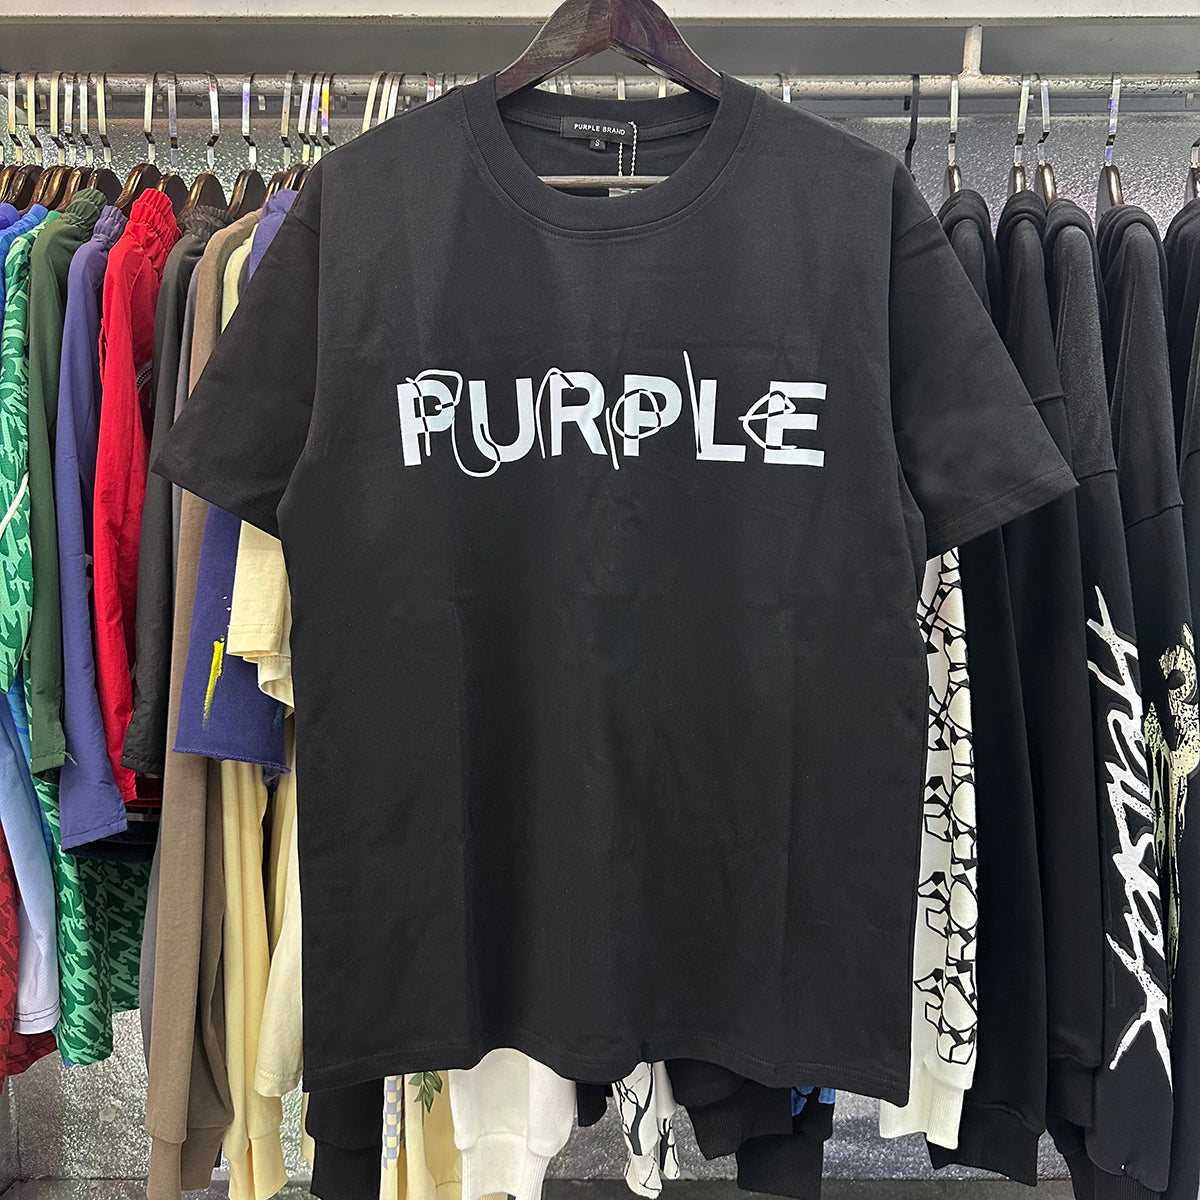 T-Shirt violet, nouveau, 2024, 3001 